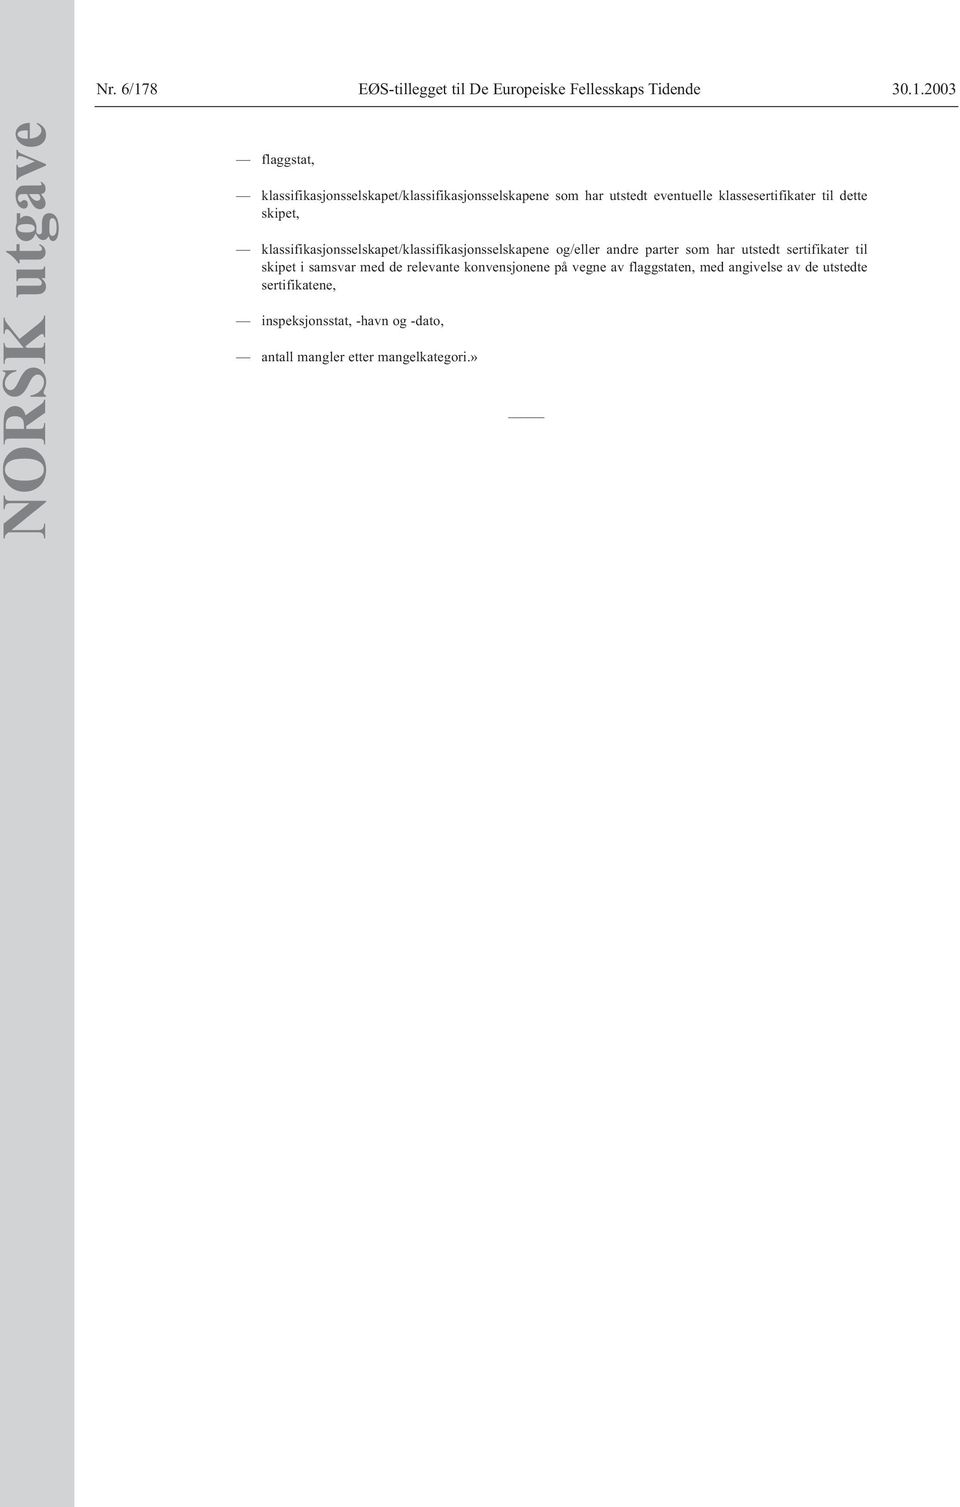 2003 NORSK utgave flaggstat, klassifikasjonsselskapet/klassifikasjonsselskapene som har utstedt eventuelle klassesertifikater